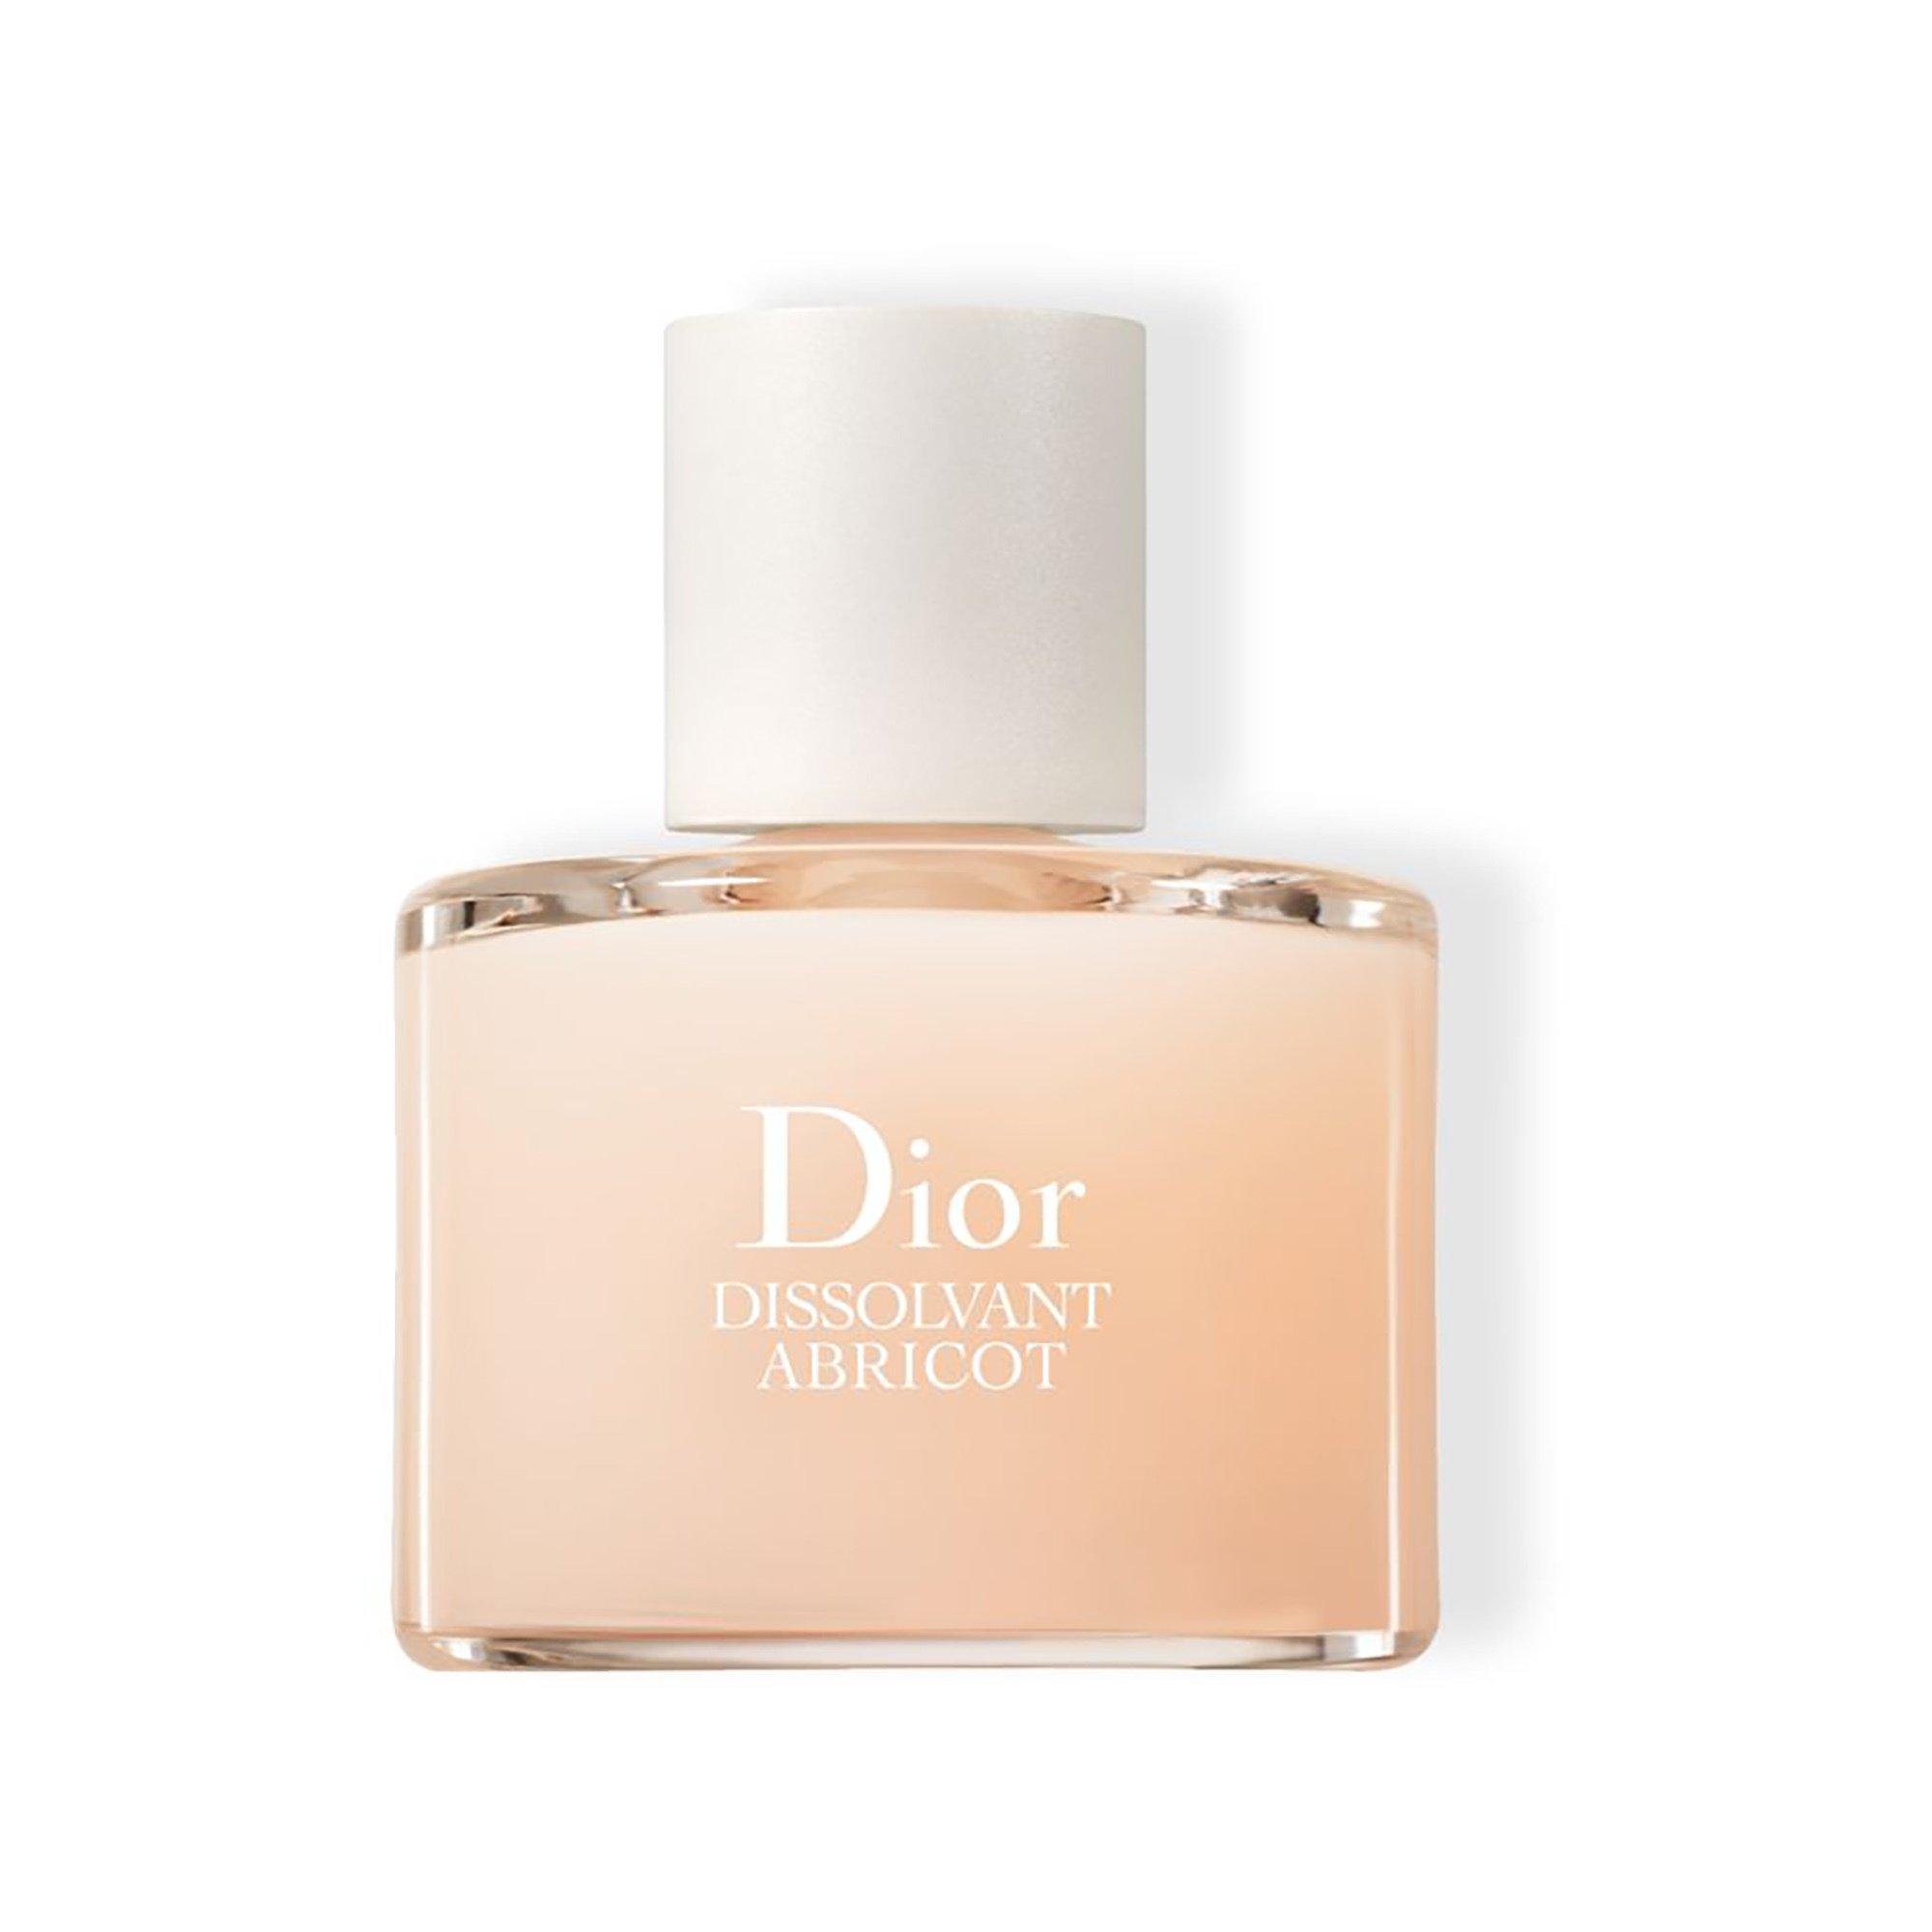 Image of Dior Dissolvant Abricot - Dissolvant Abricot - 50ml